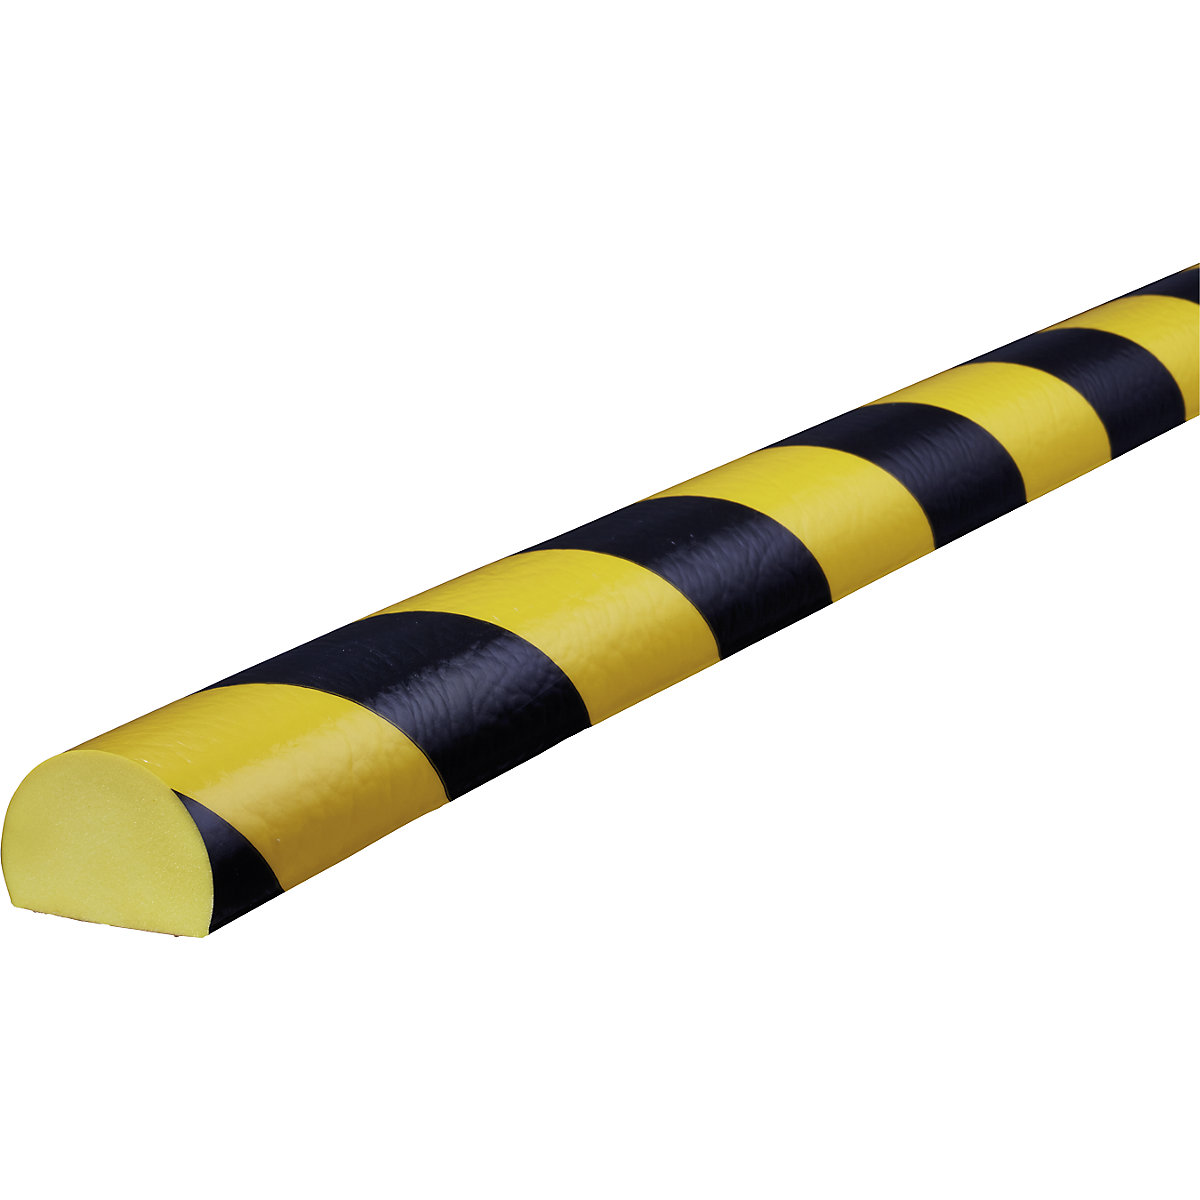 Proteção de superfícies Knuffi® – SHG, tipo C, corte individual, por metro corrente, preto/amarelo-22